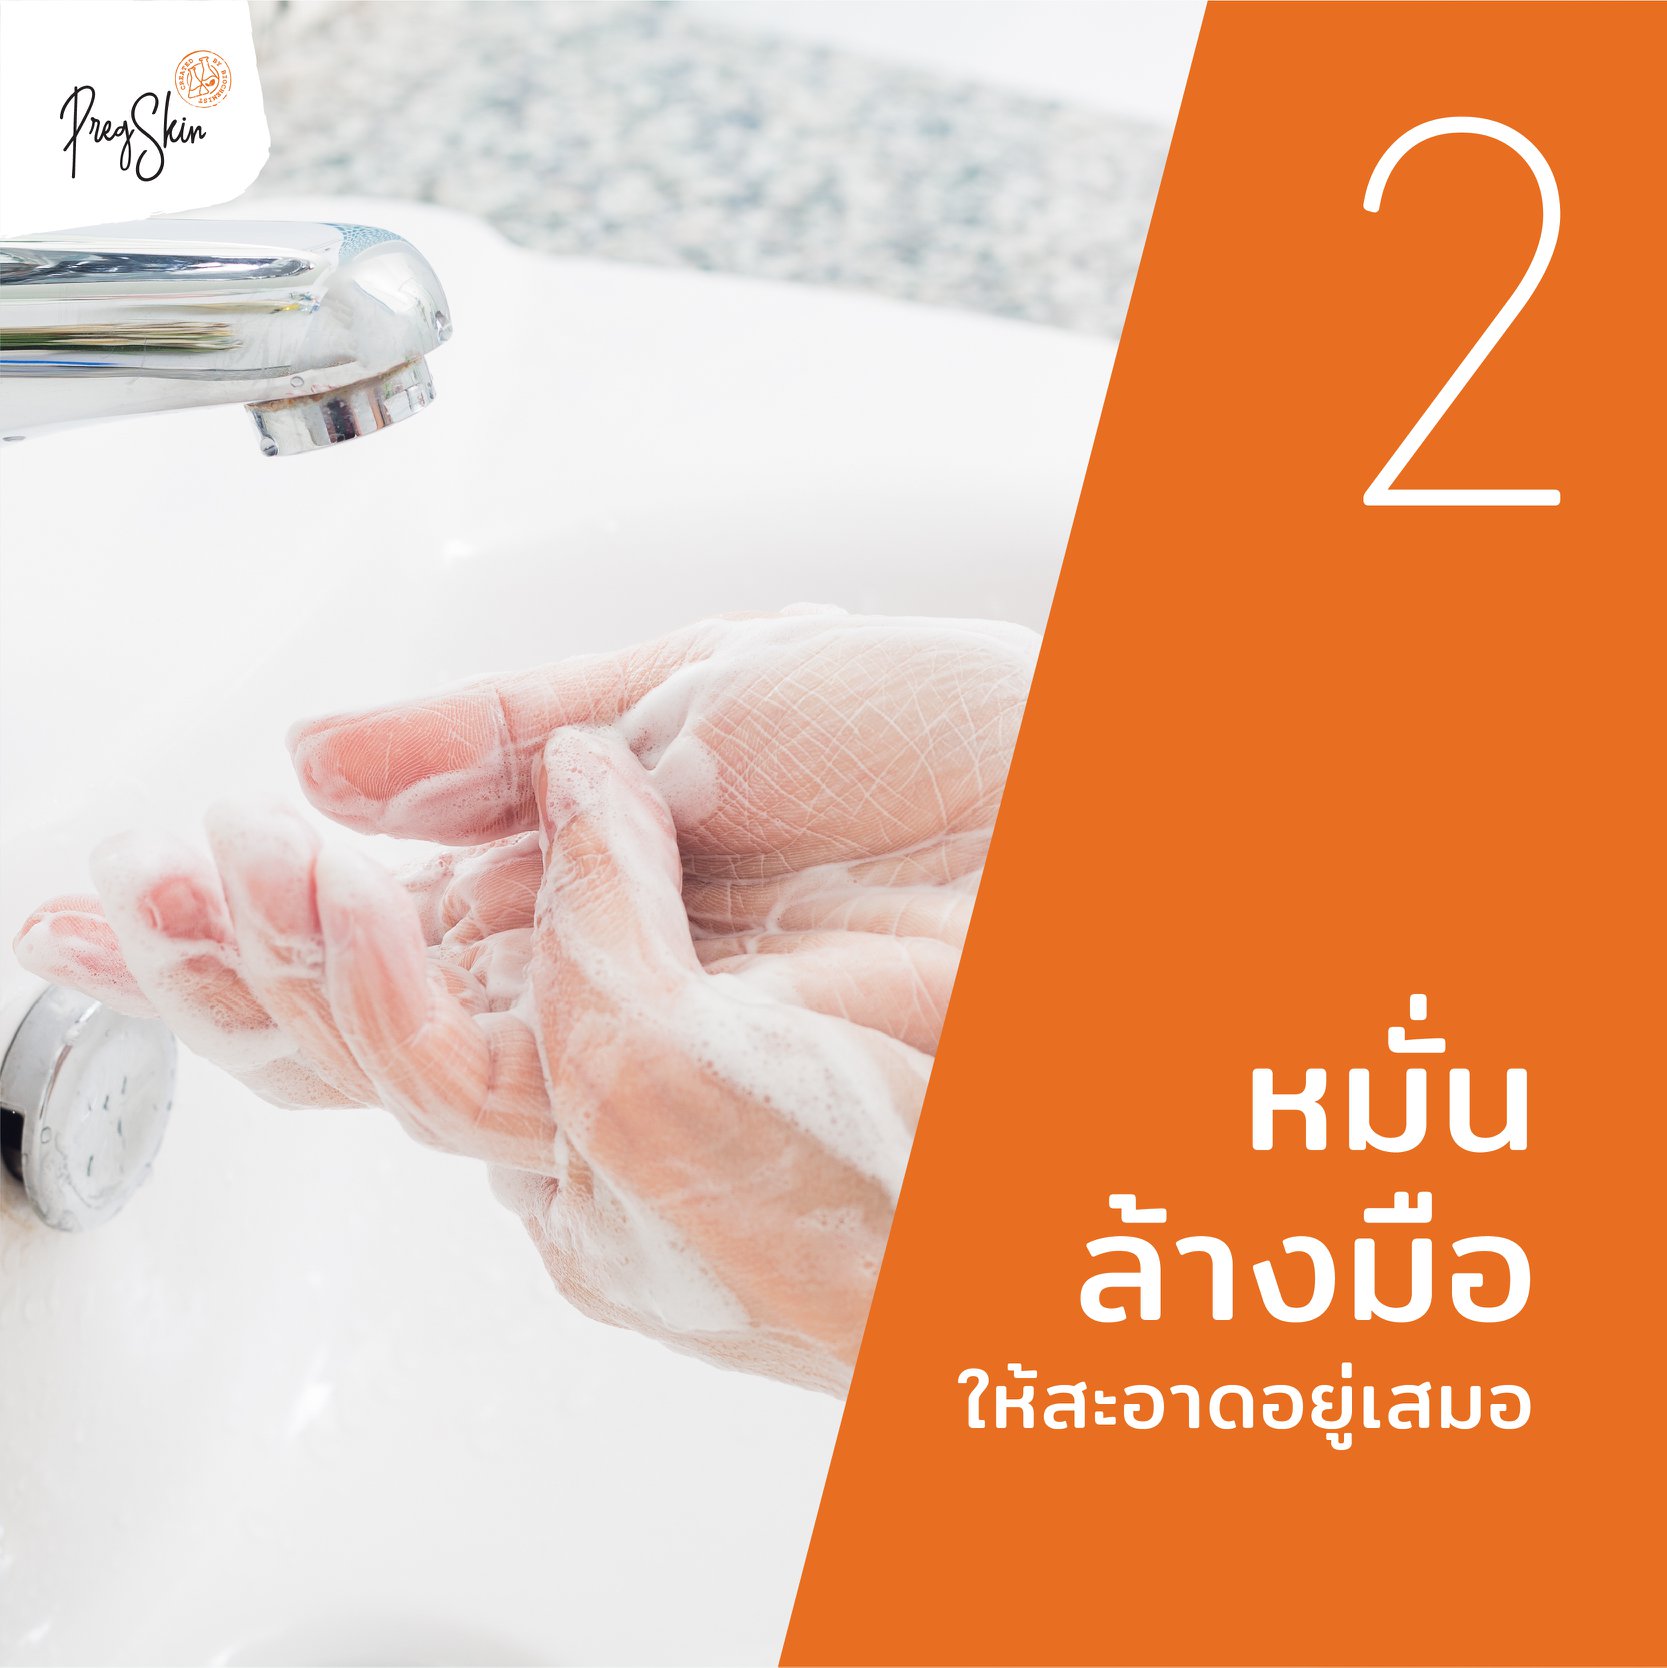 wash hands regularly to prevent coronavirus